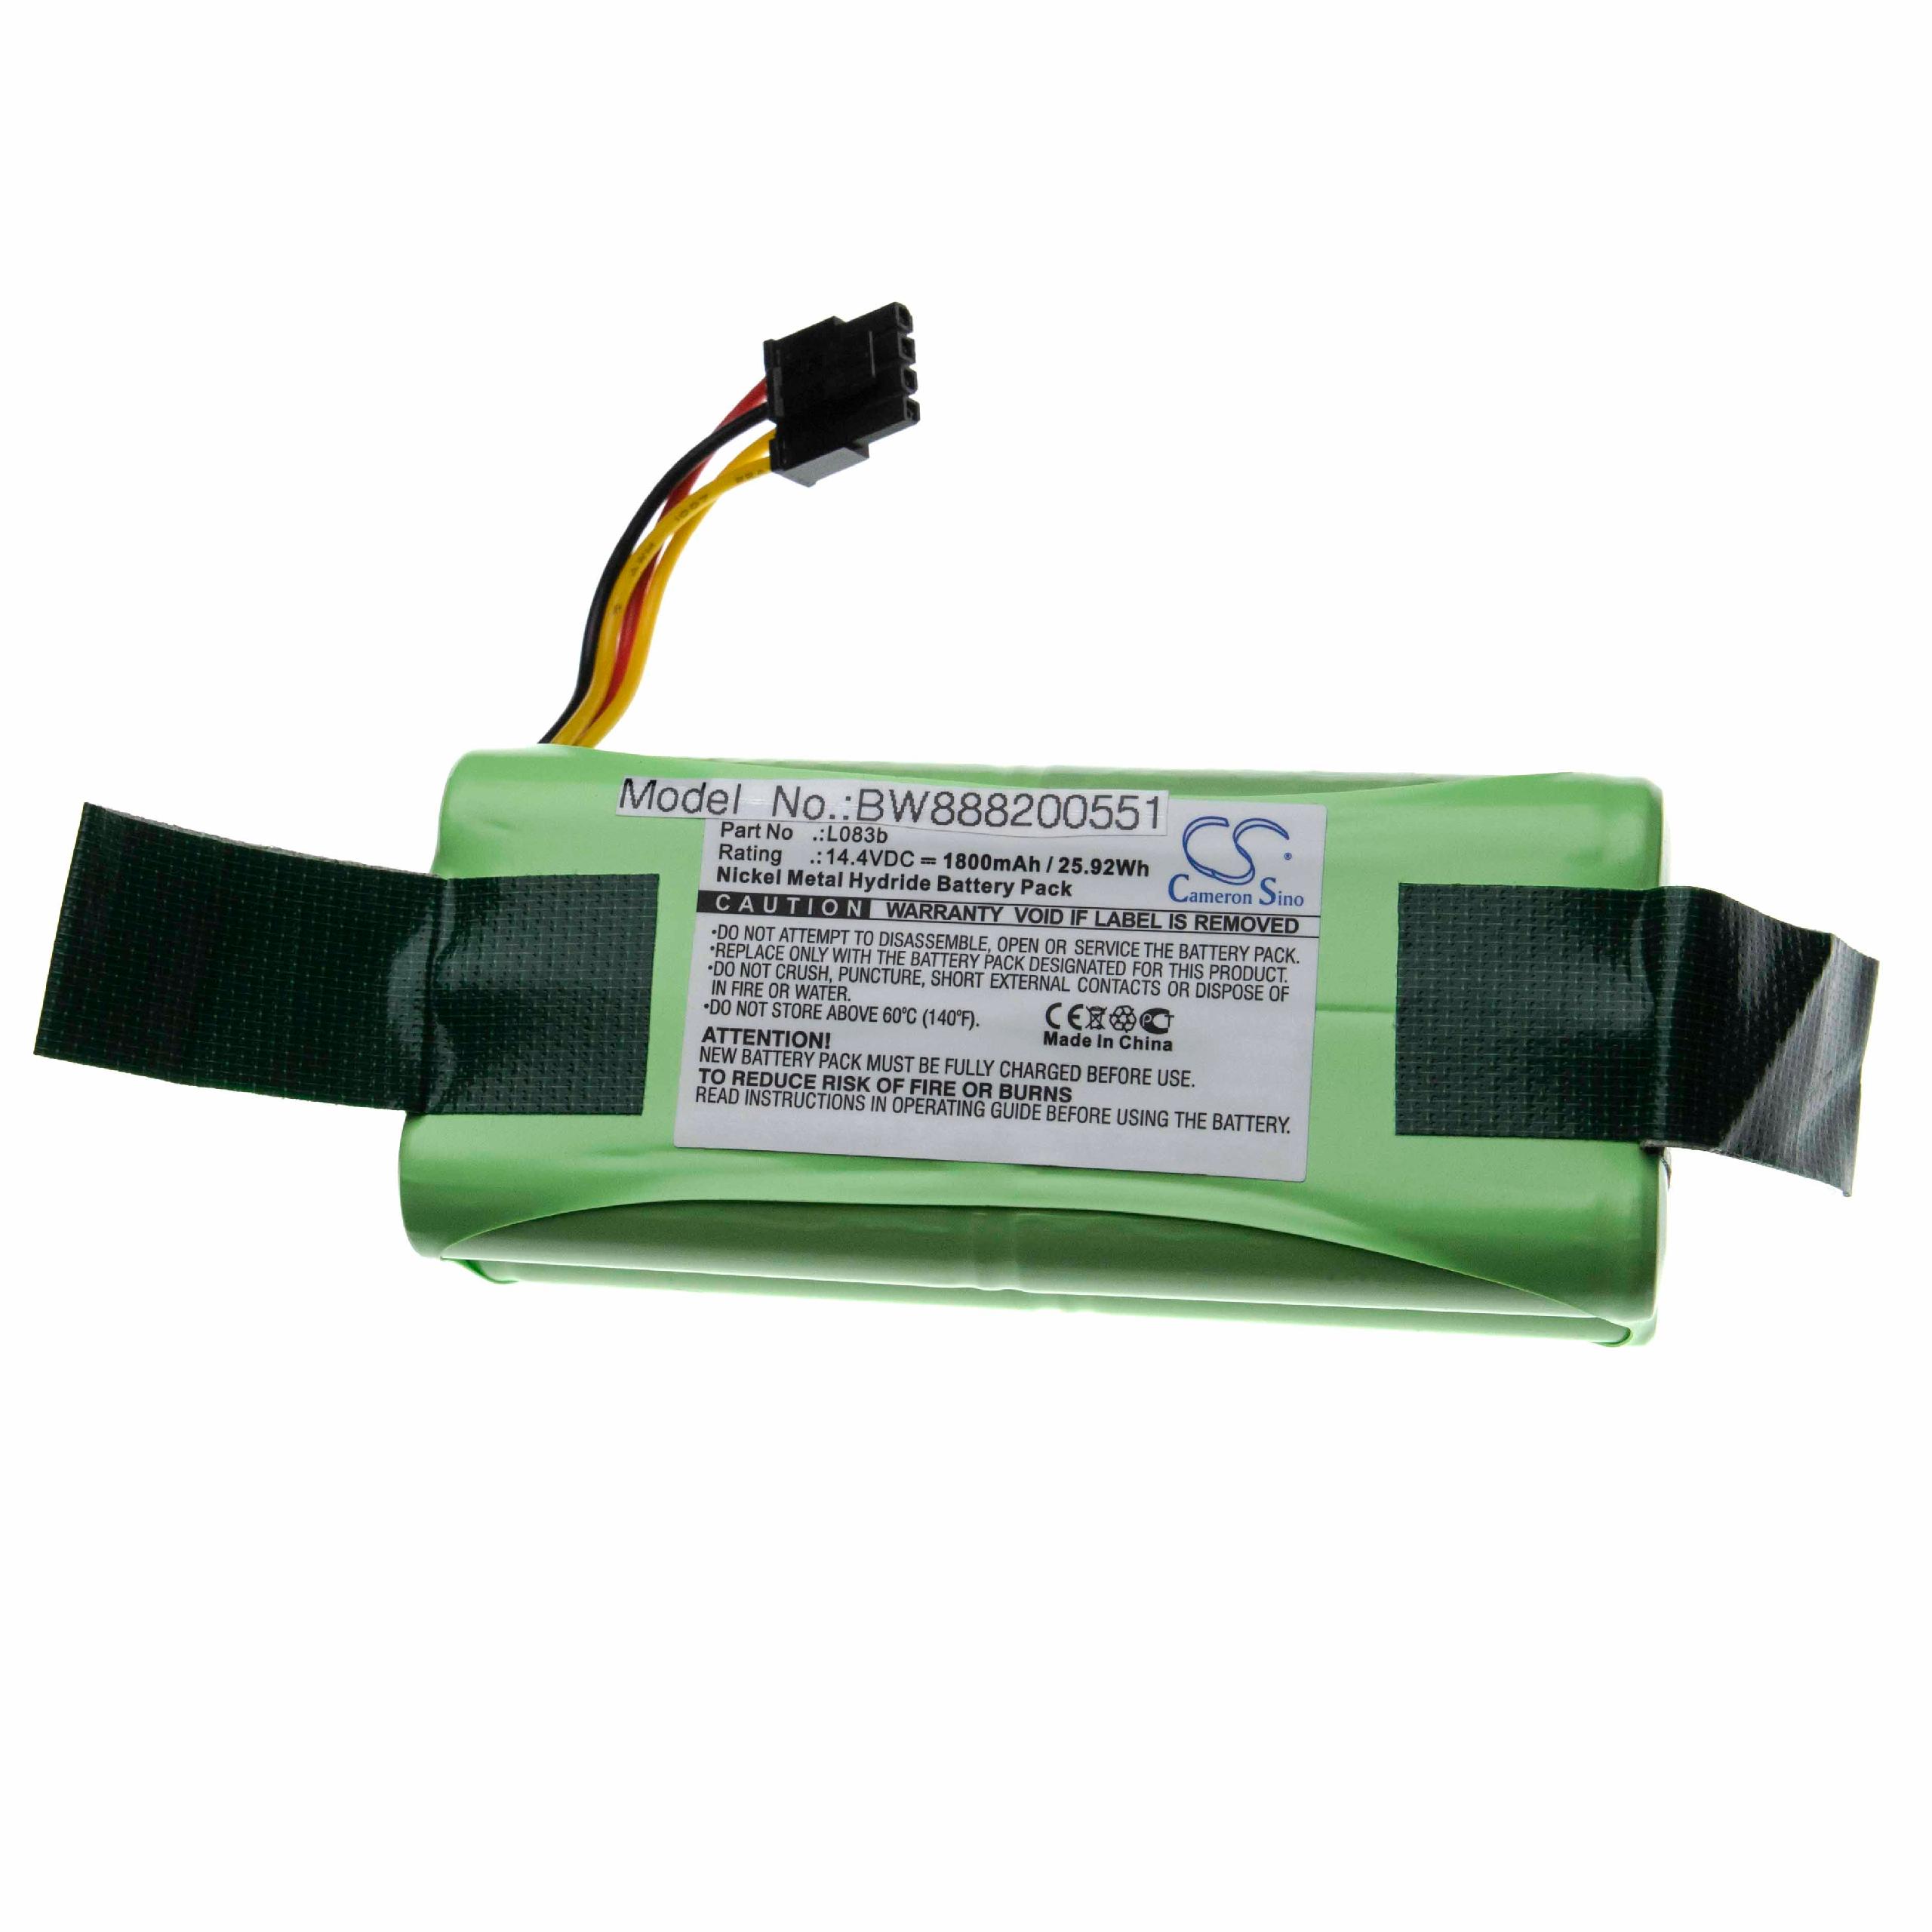 Batterie remplace Midea L083b pour robot aspirateur - 1800mAh 14,4V NiMH